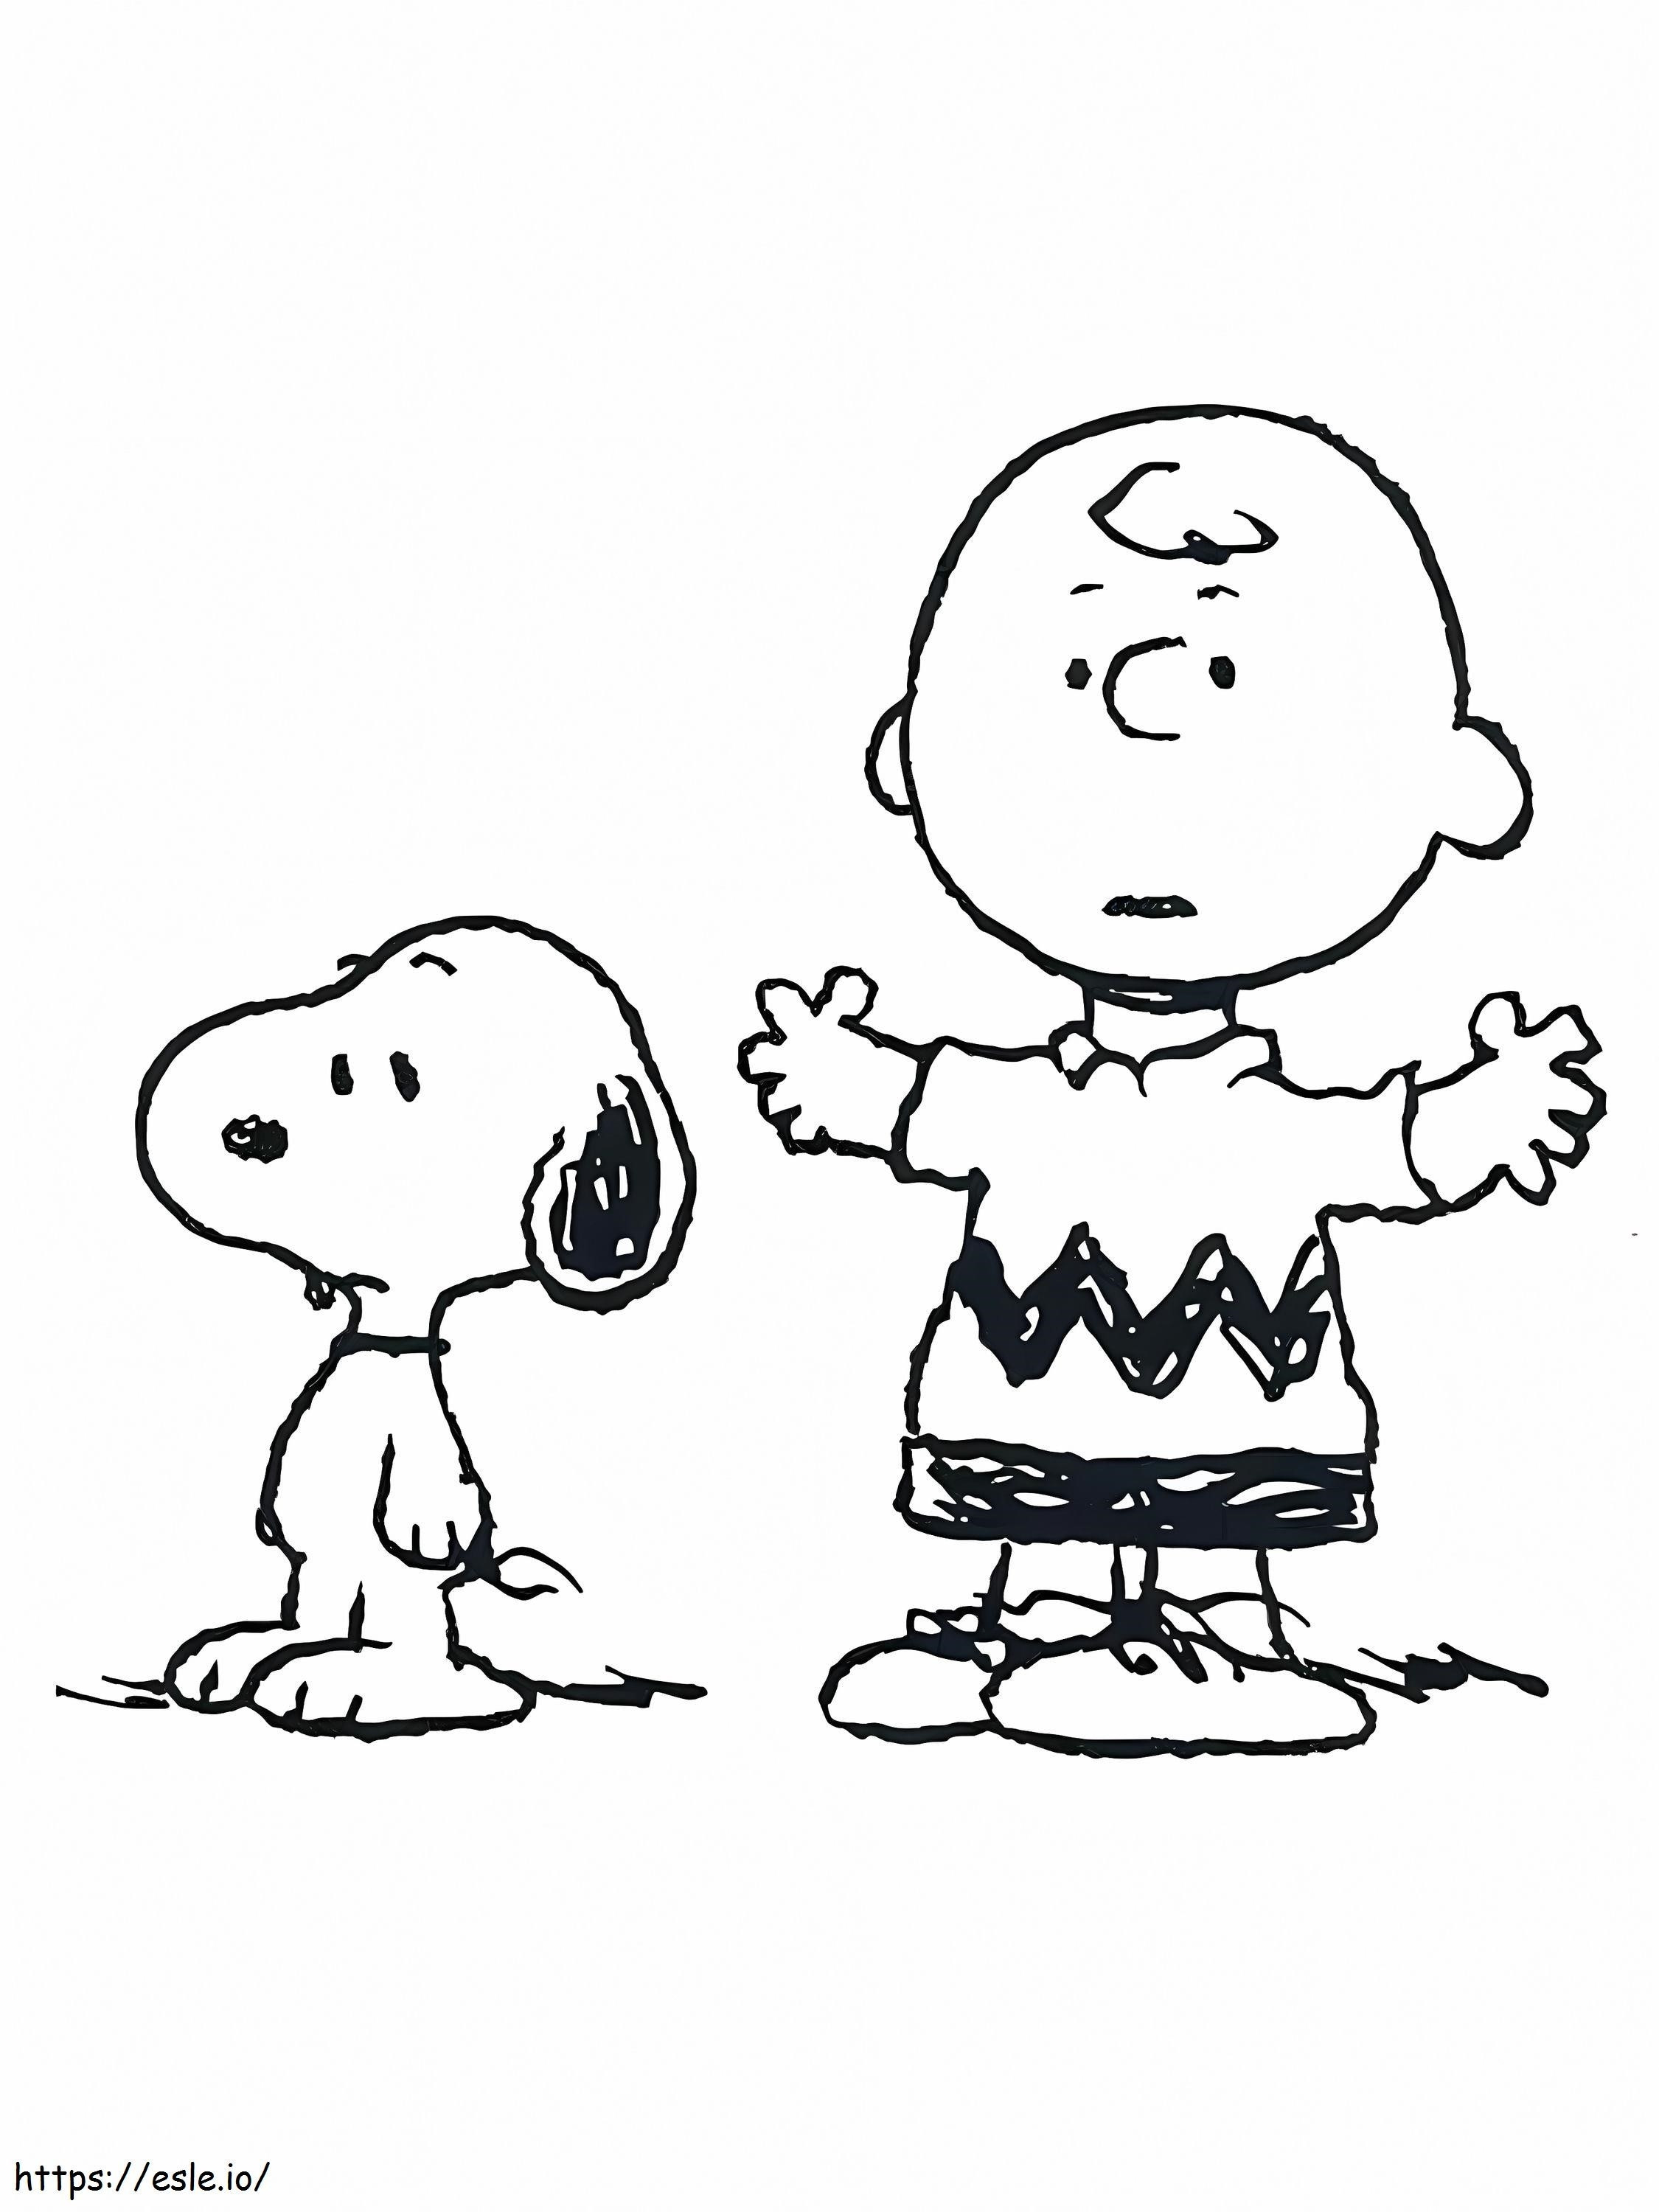 Coloriage Snoopy et Charlie Brown à imprimer dessin